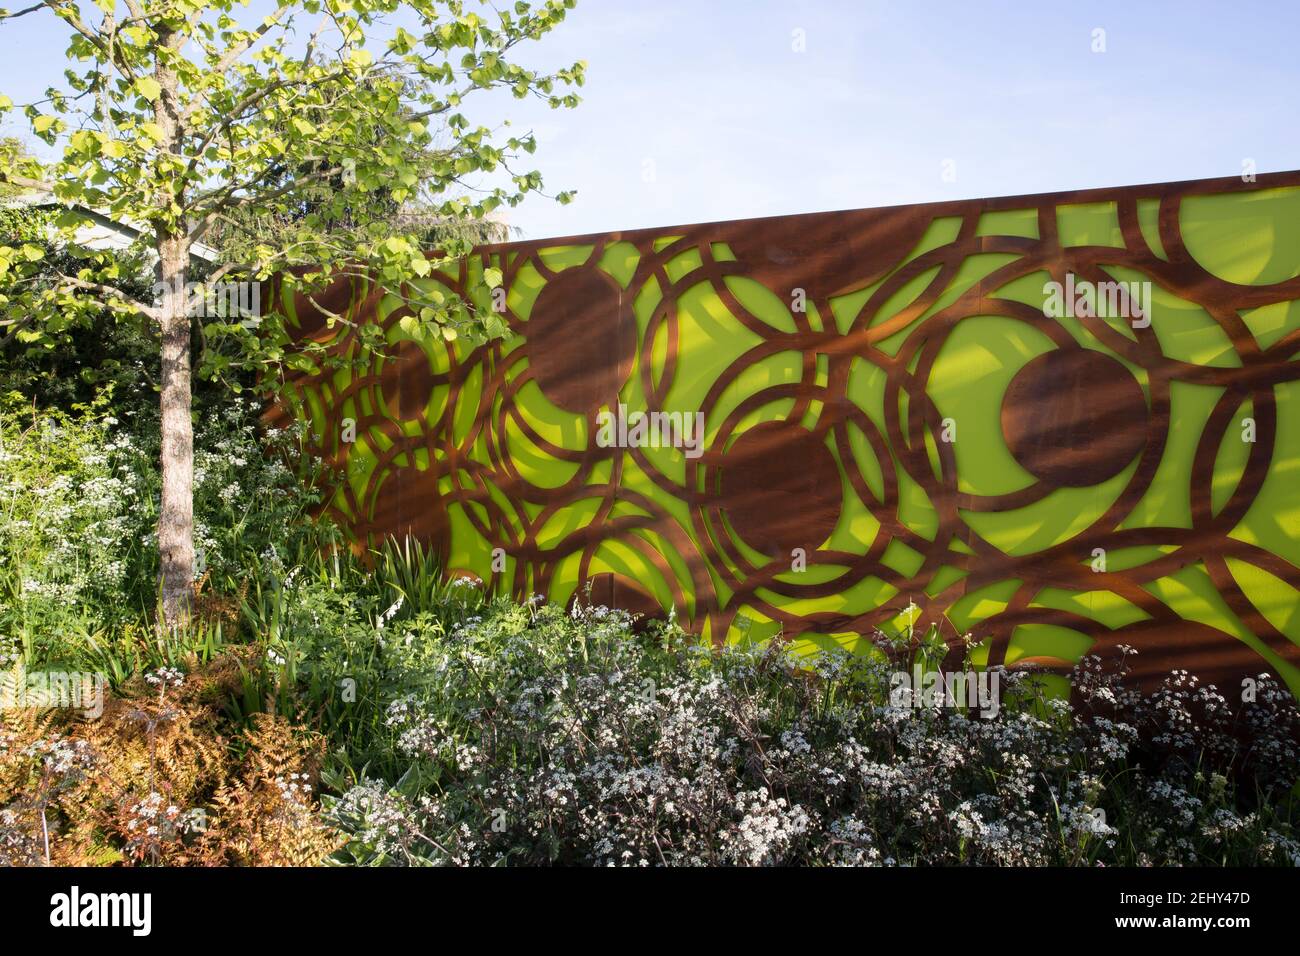 Ein moderner Garten Corten Stahl grünen Gartenzaun Bildschirm Paneele -  Frühling -Blumengrenze - blauer Himmel - Corylus colurna - ein türkischer  Haselnussbaum -England Vereinigtes Königreich Stockfotografie - Alamy